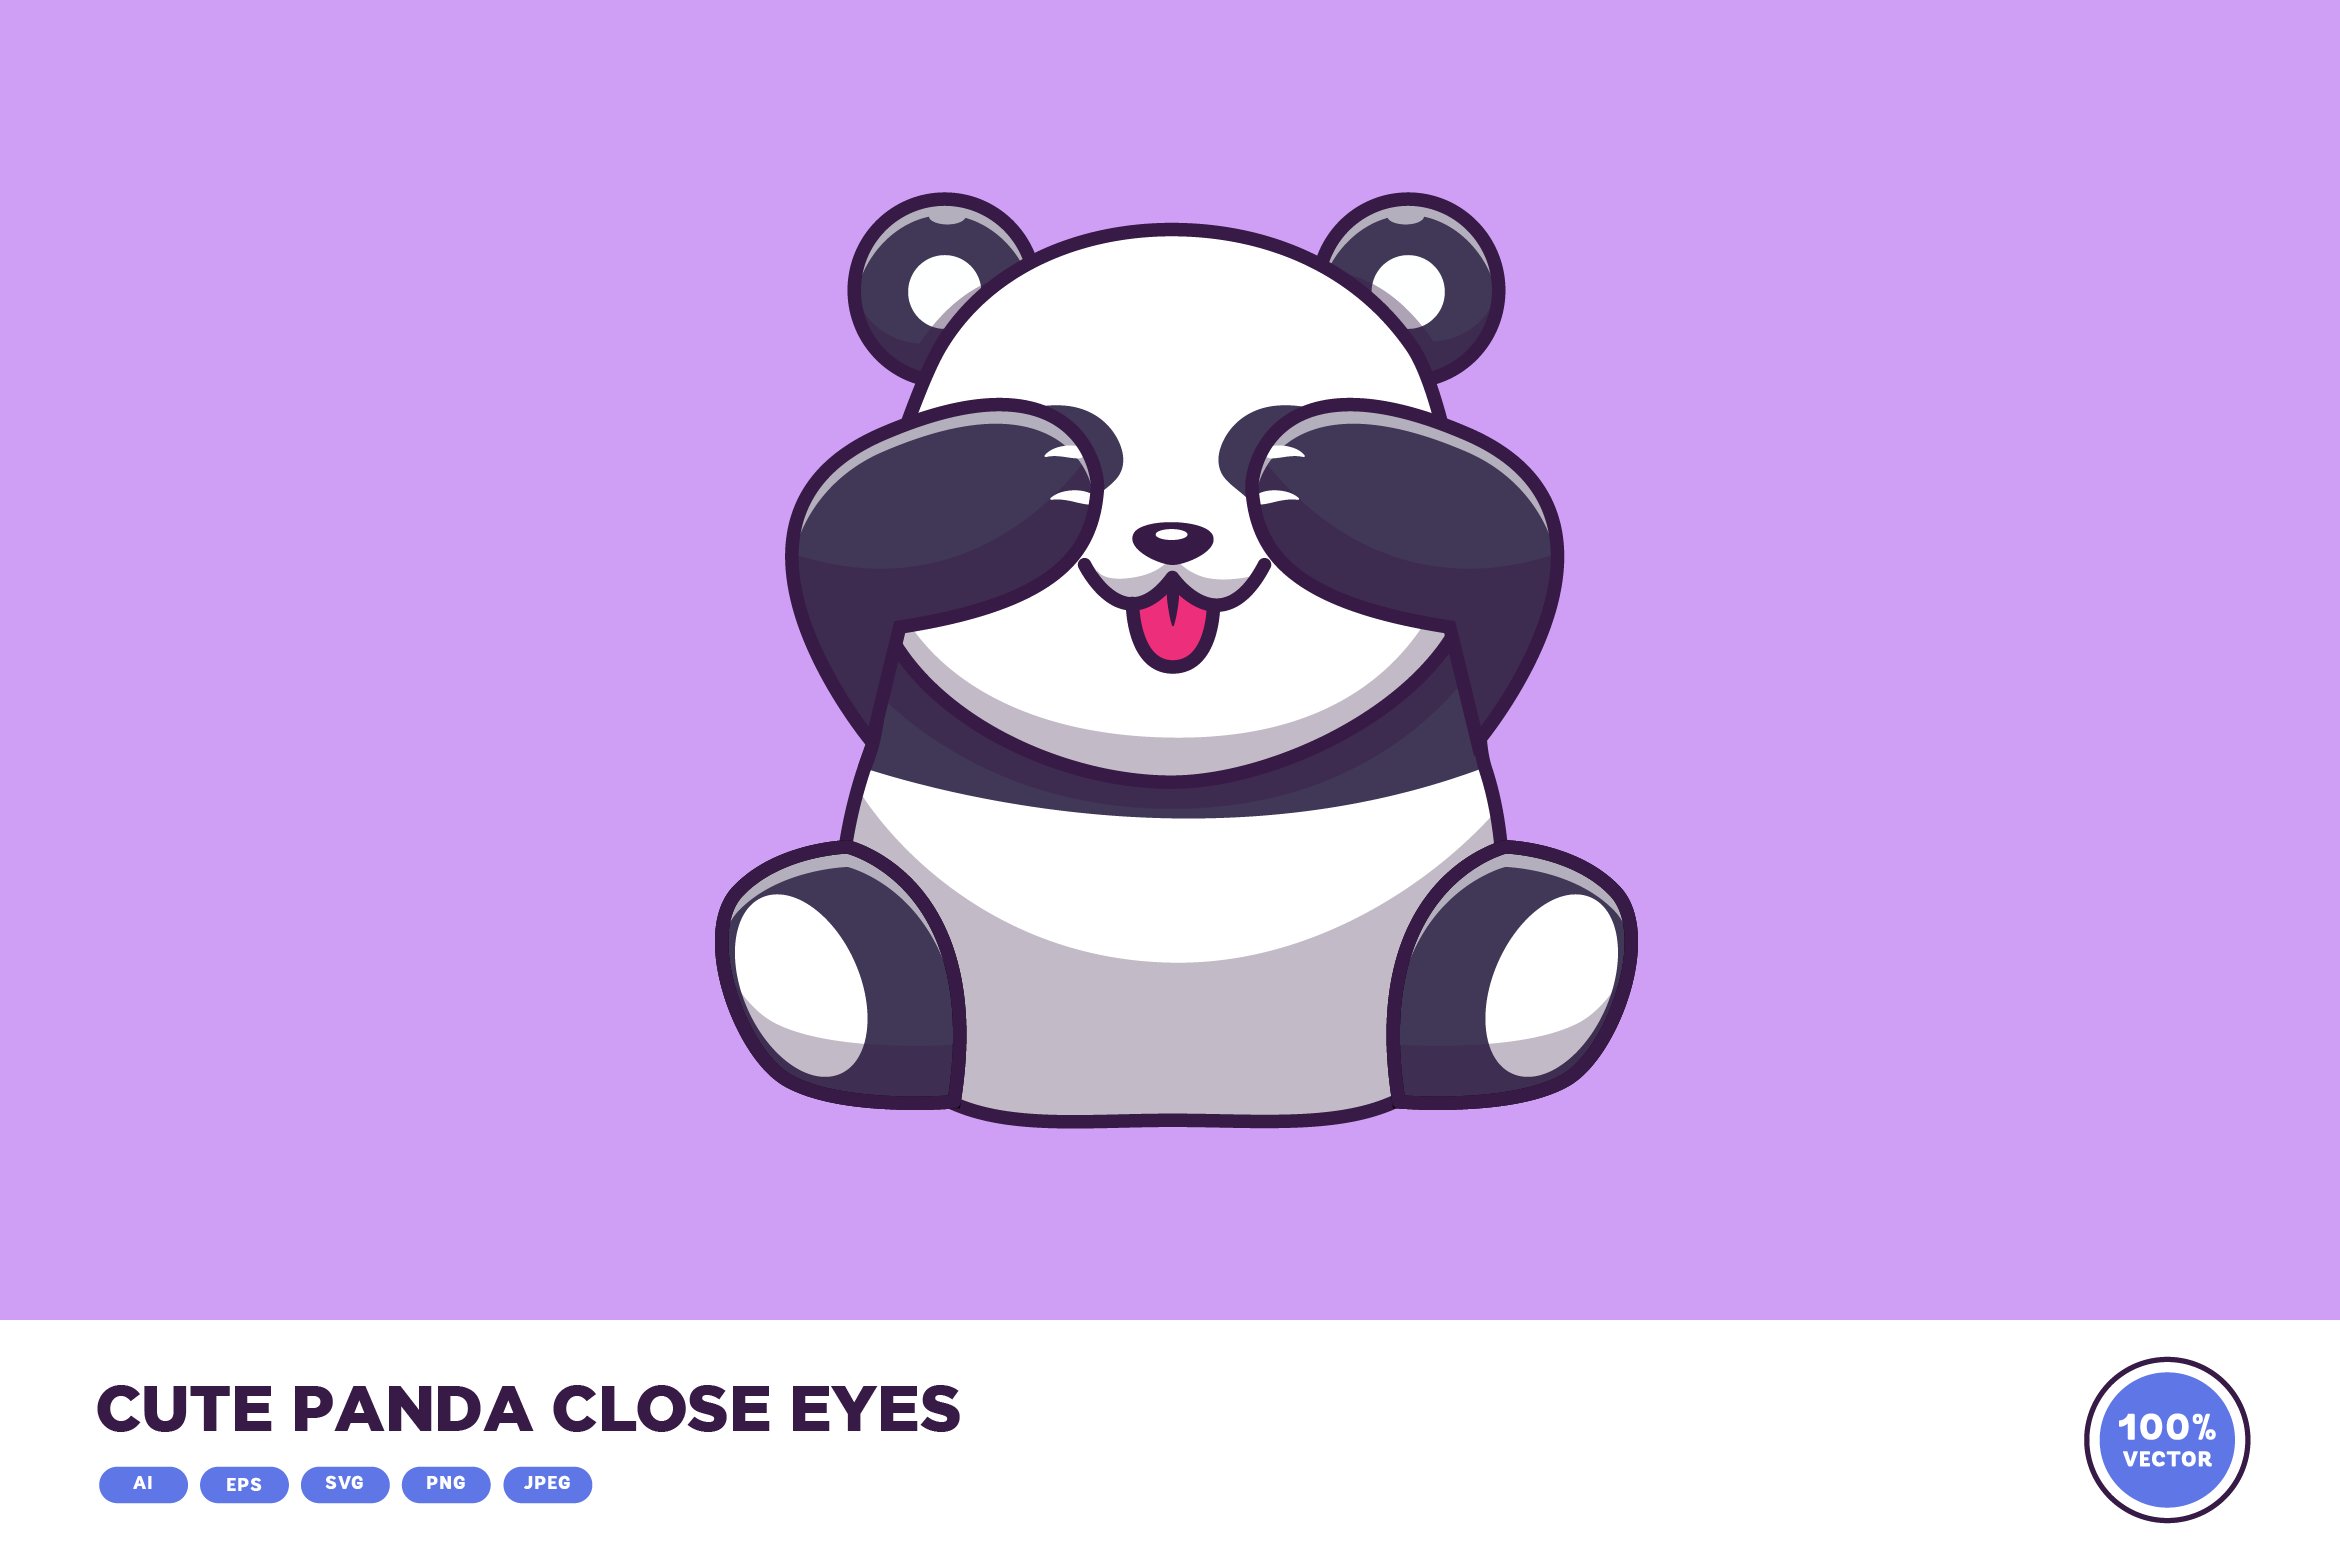 Cute Panda Close Eyes Cartoon cover image.